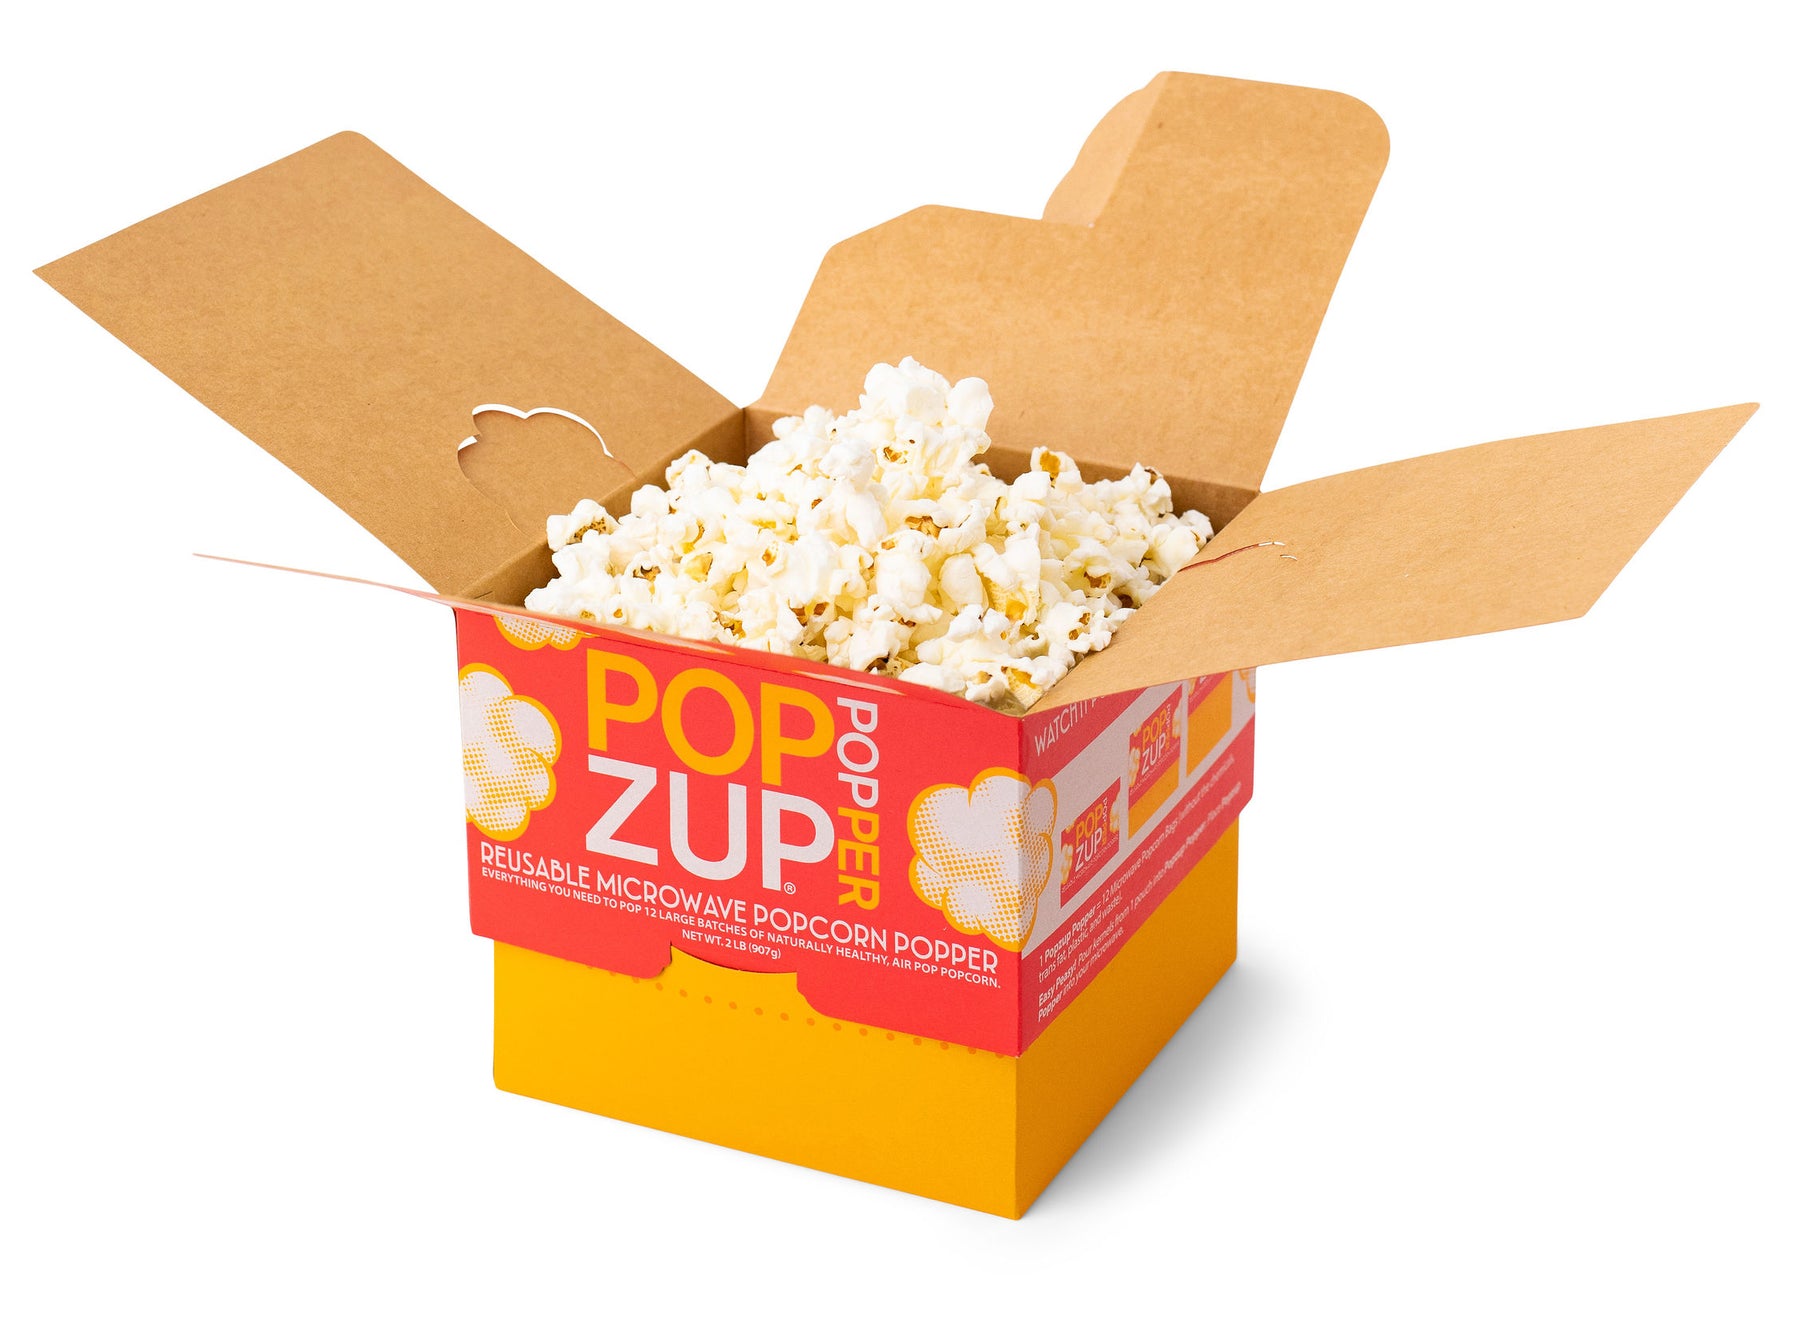 Presto Poplite Hot Air Popcorn Popper - general for sale - by